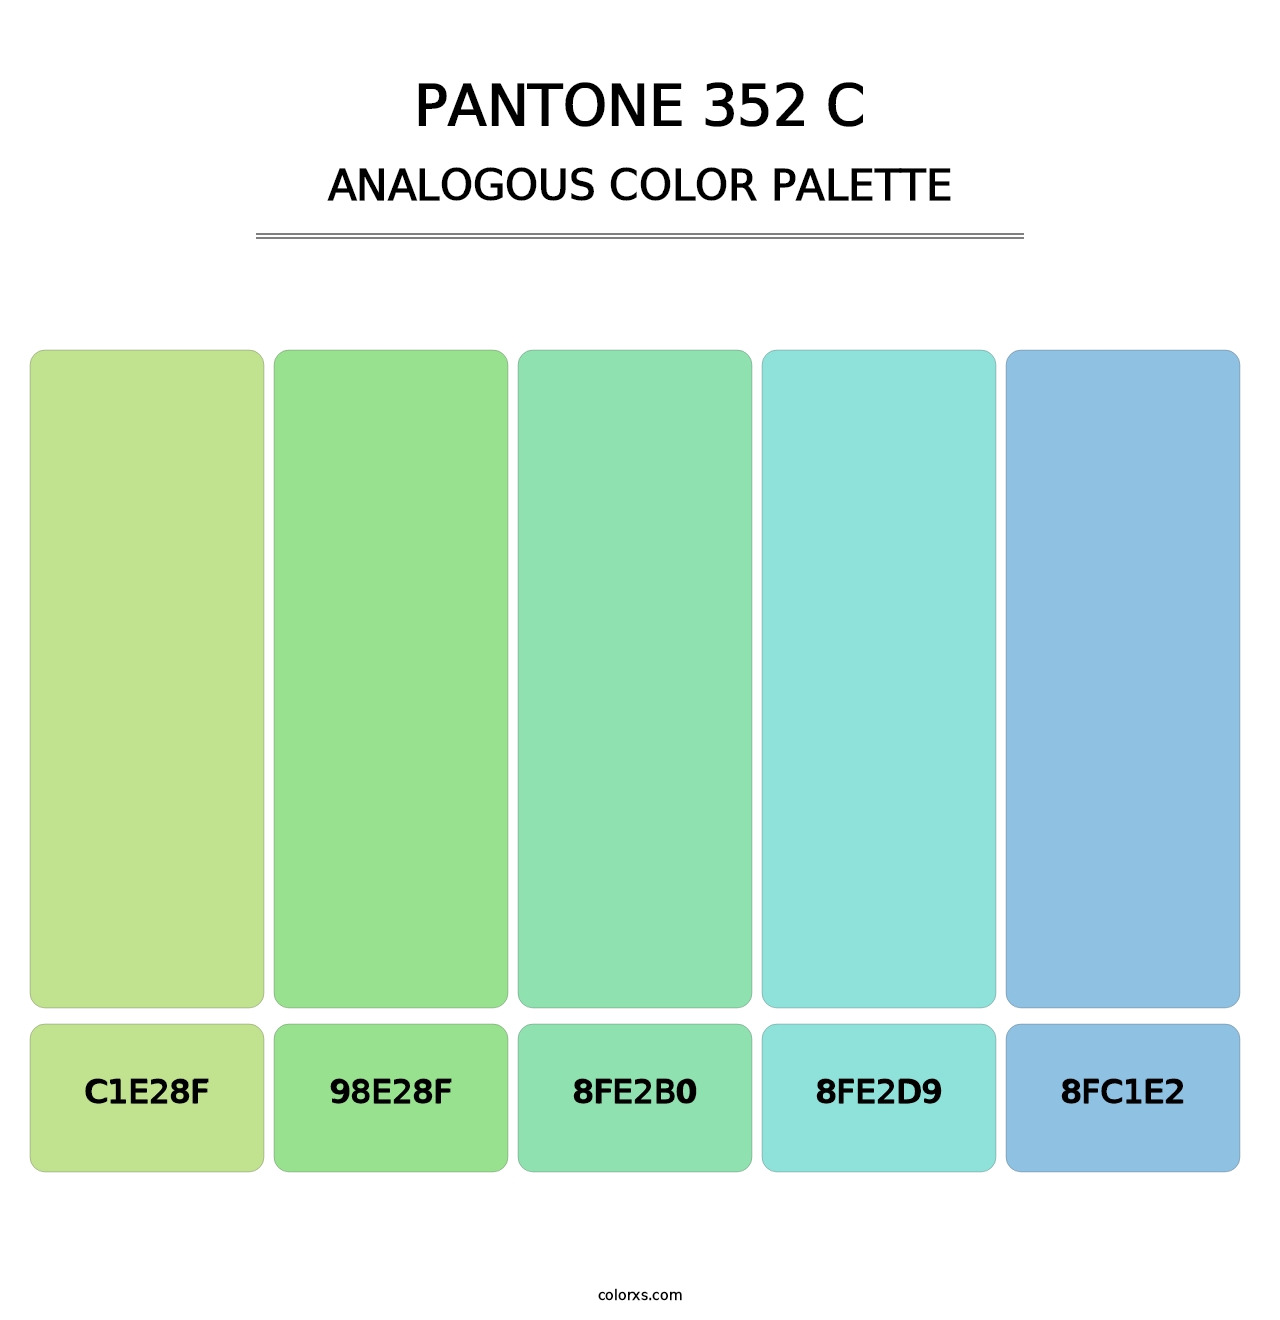 PANTONE 352 C - Analogous Color Palette